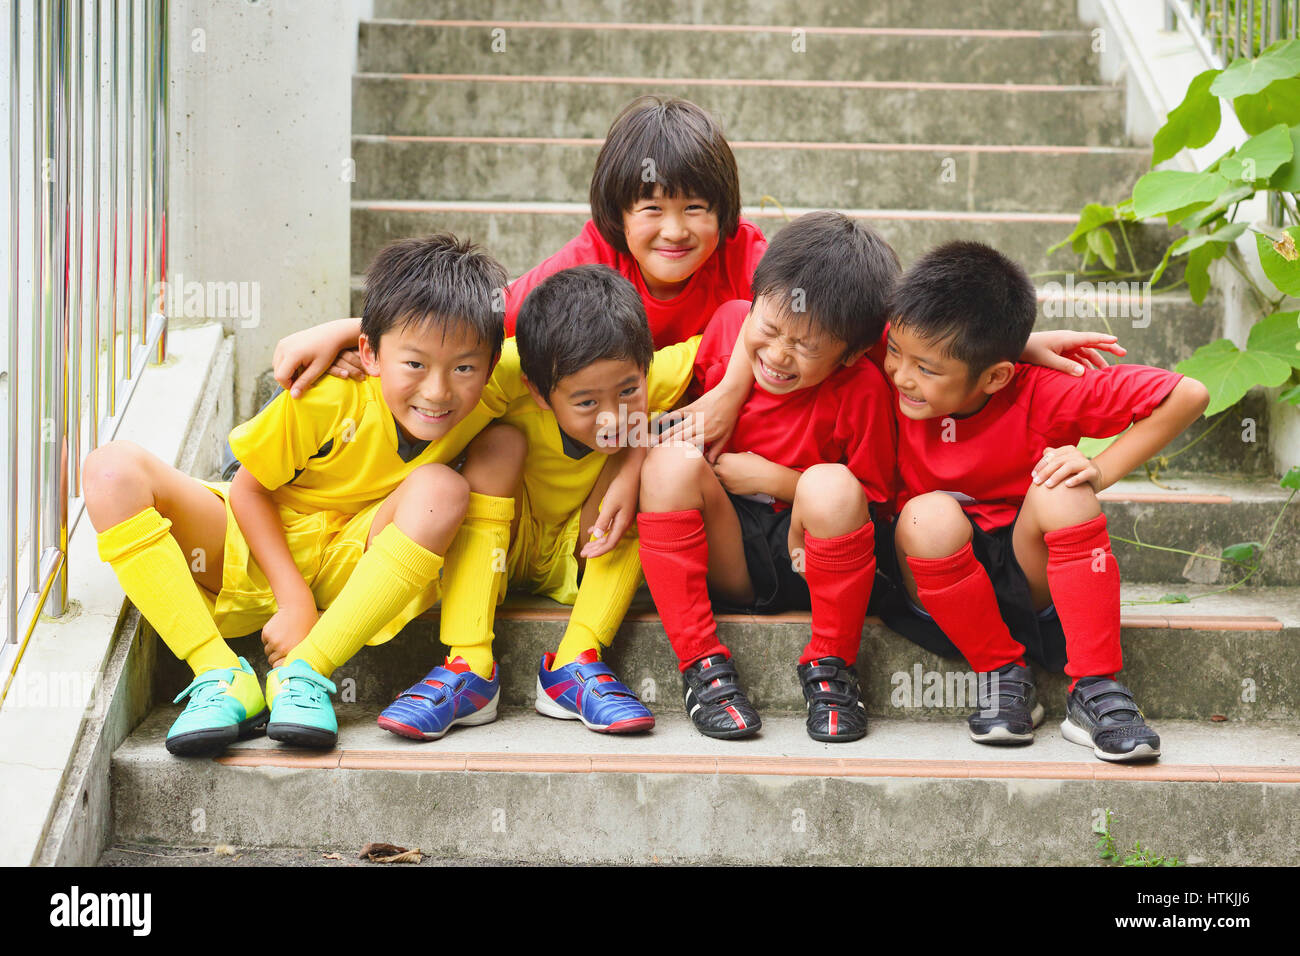 Les enfants japonais en uniforme de soccer sur un escalier Photo Stock -  Alamy